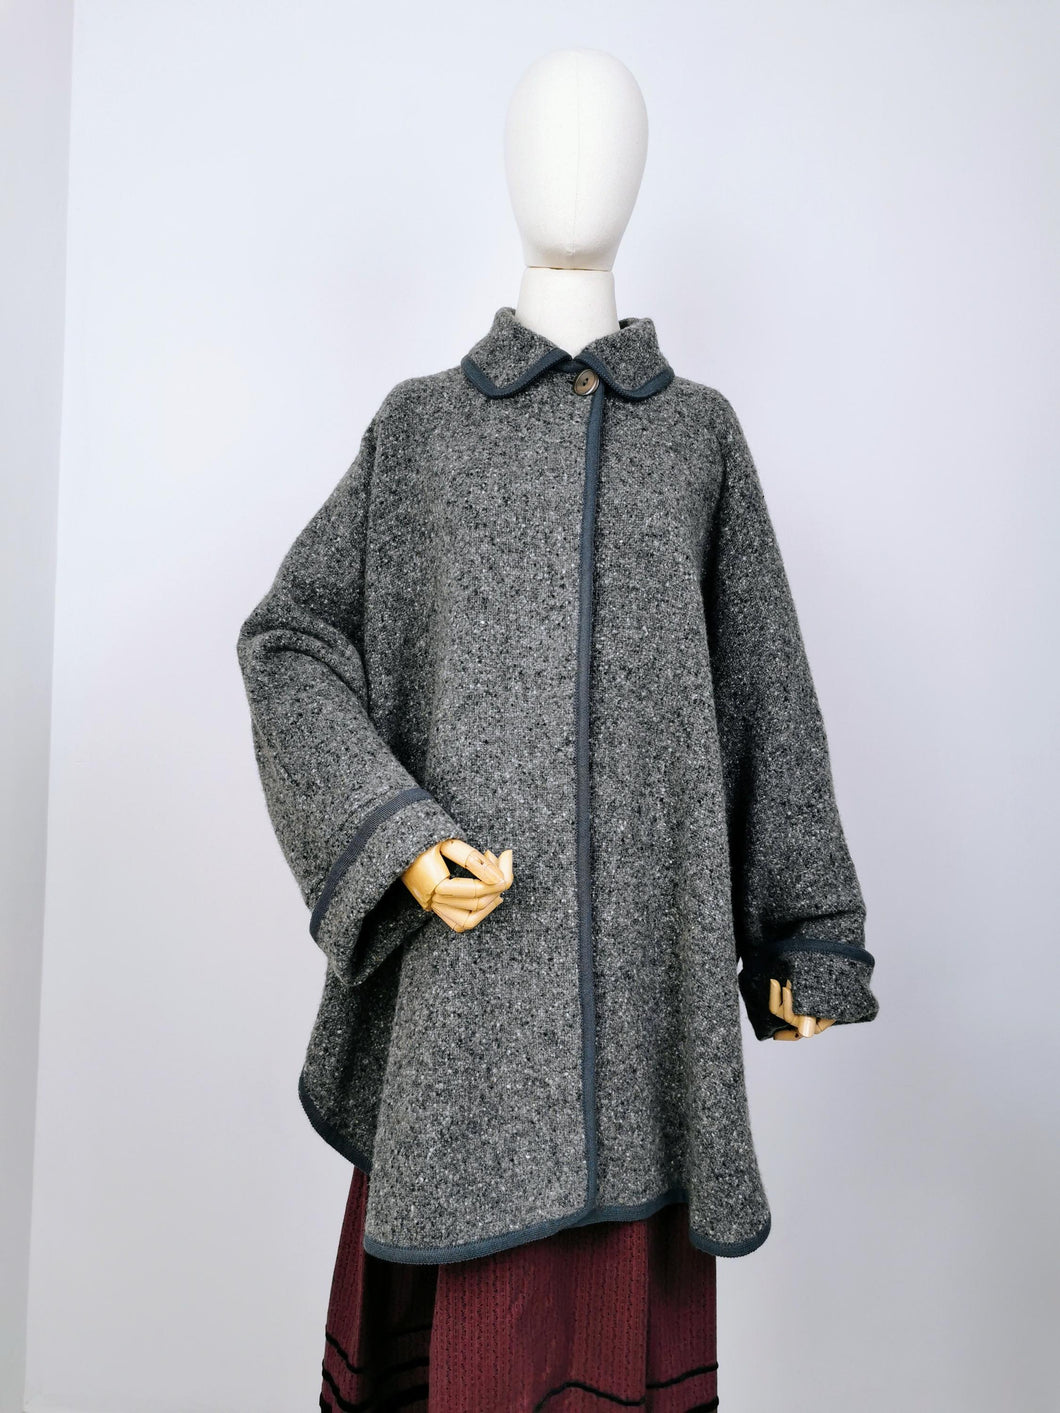 Vintage Tyrolean wool cardigan cape